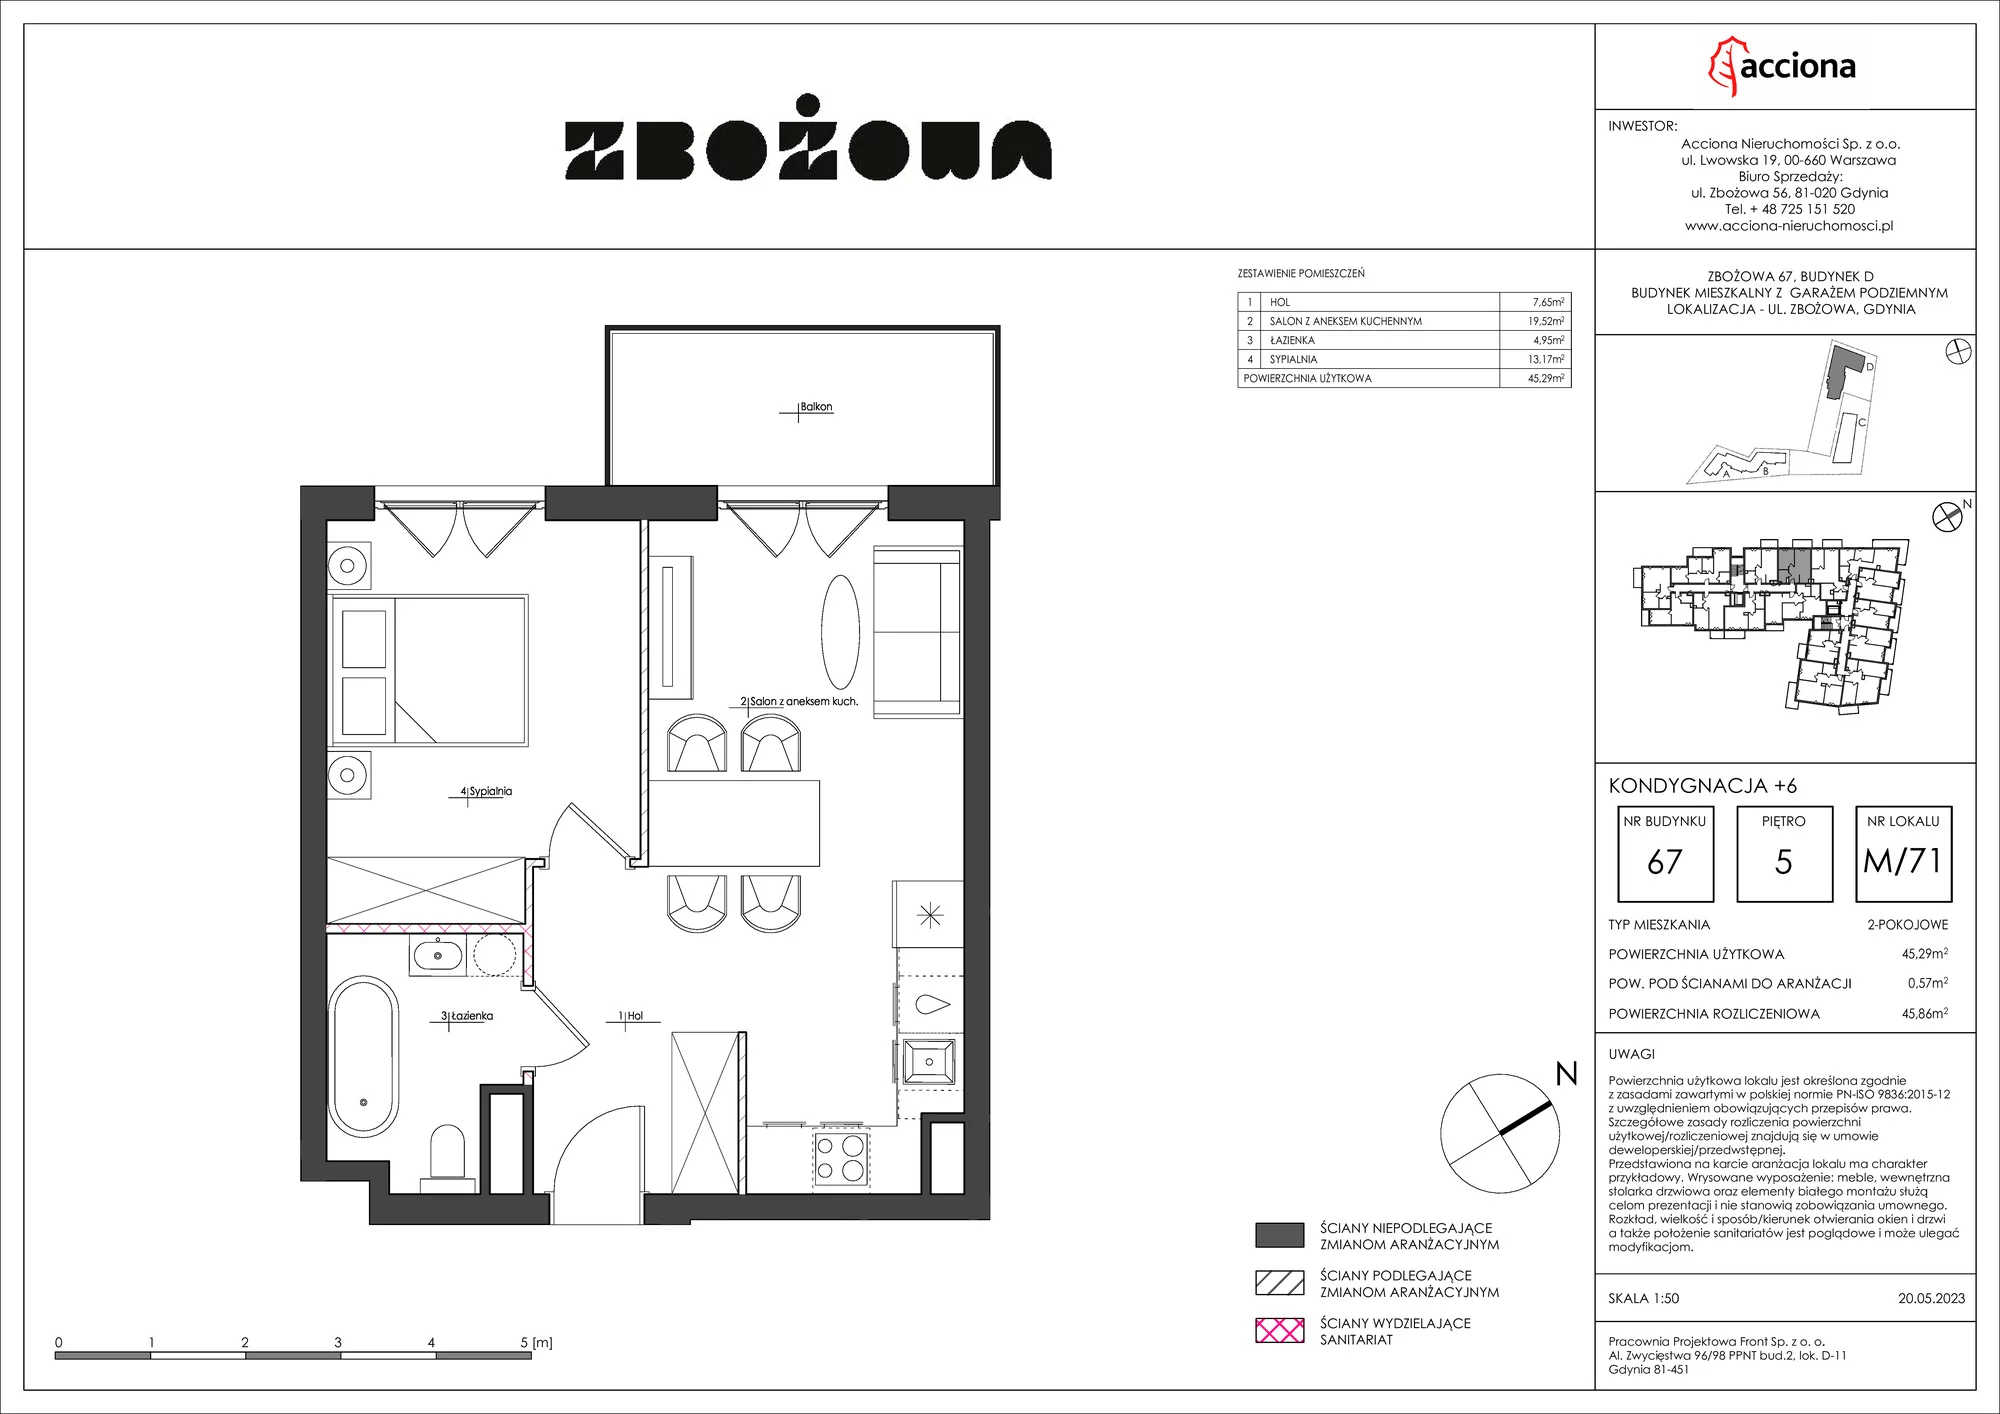 Mieszkanie 45,86 m², piętro 5, oferta nr 67.71, Zbożowa, Gdynia, Cisowa, ul. Zbożowa